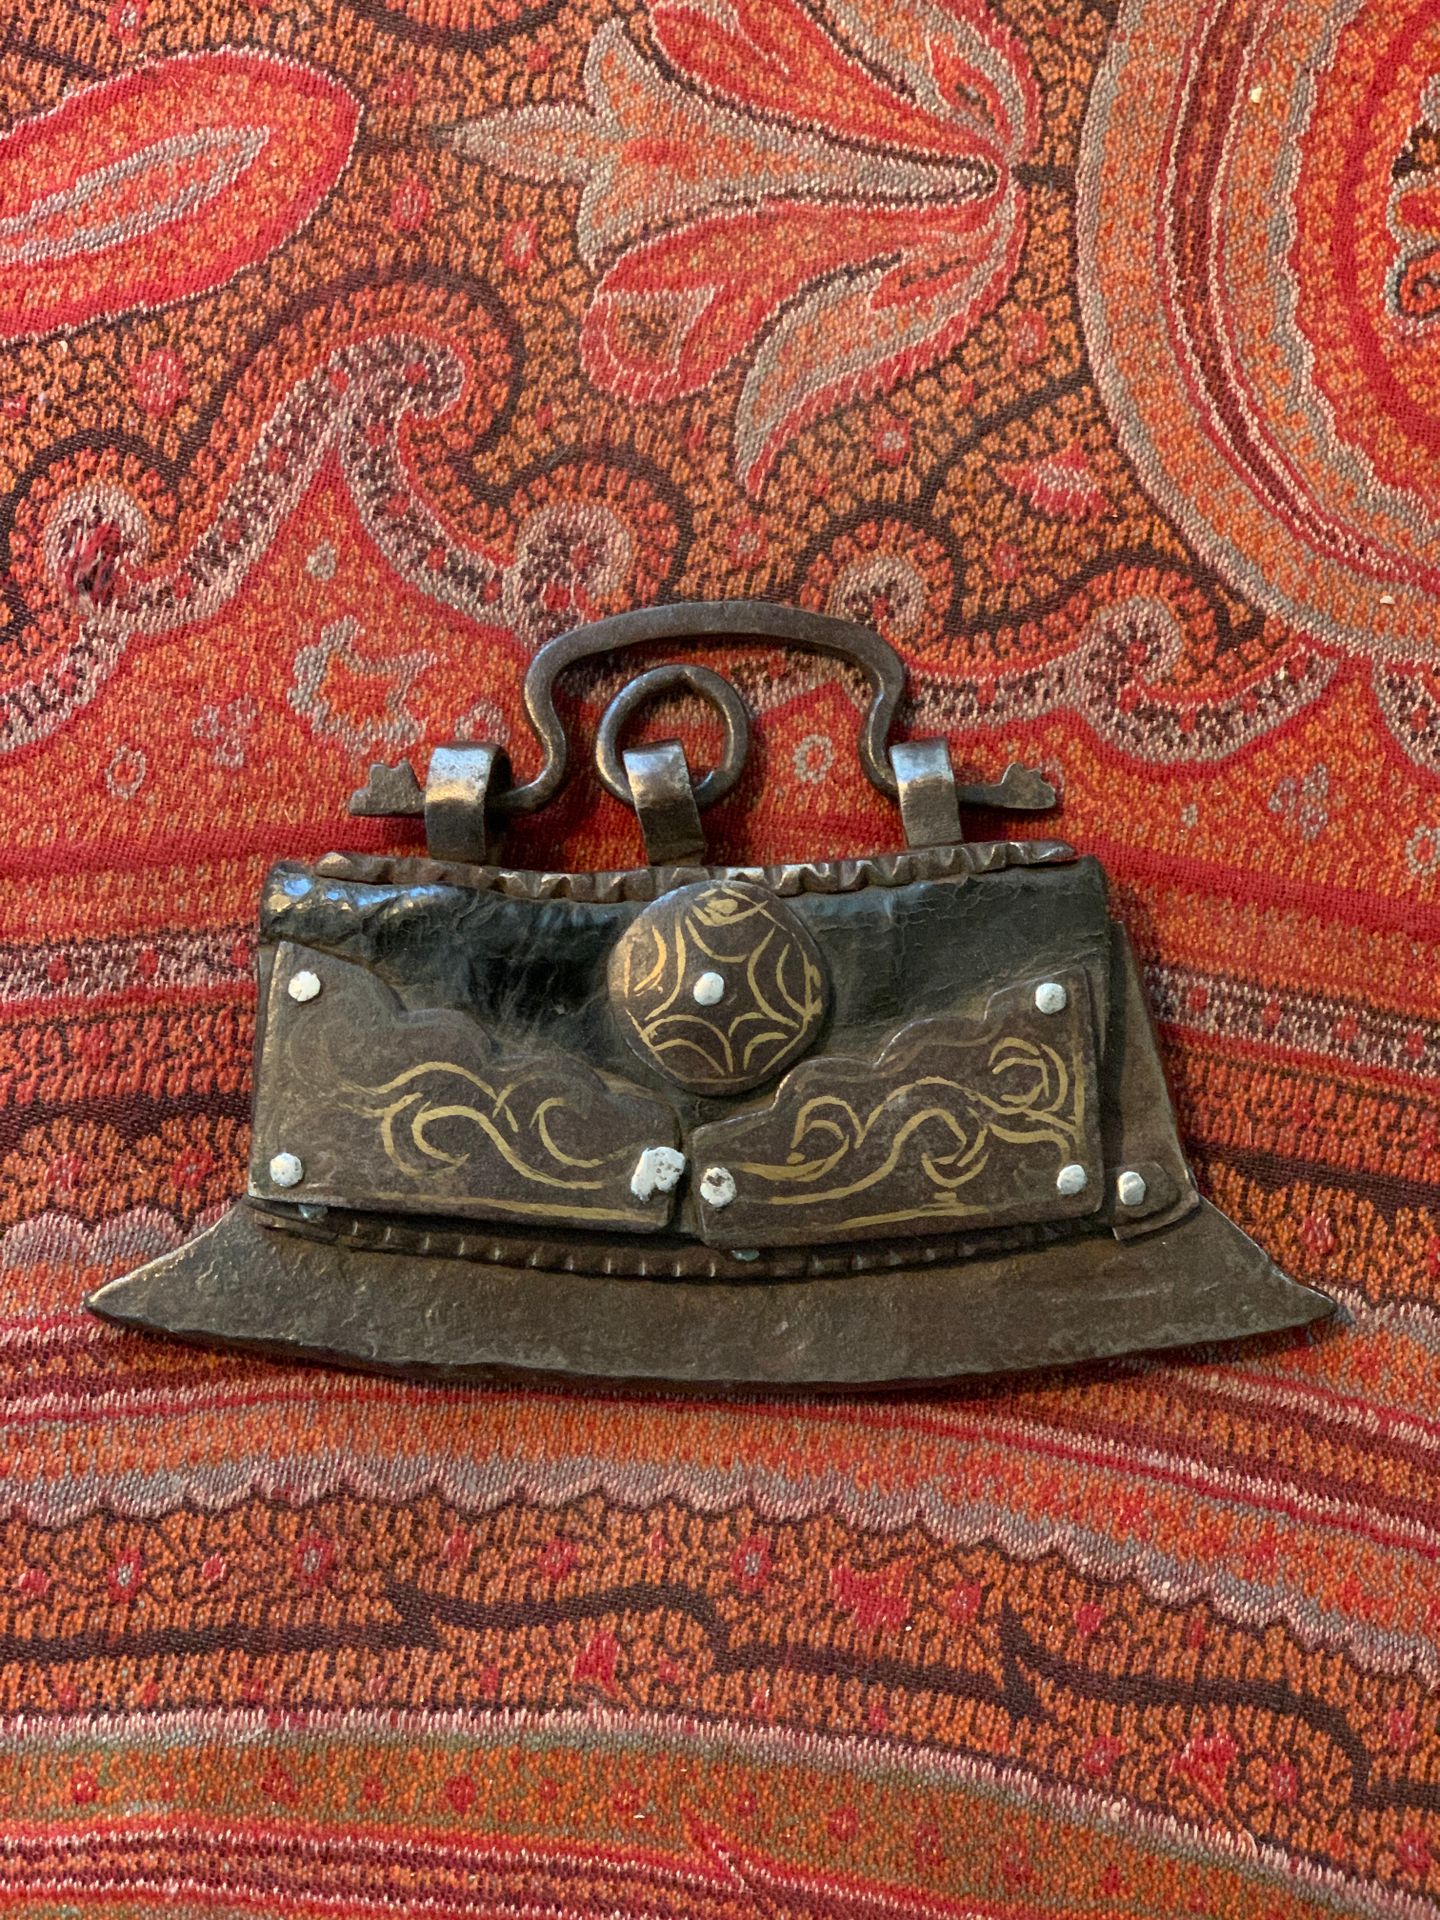 Null Tibetisches Feuerzeug aus Stahl mit Goldeinlage und Leder.

Tibet, 19. Jahr&hellip;